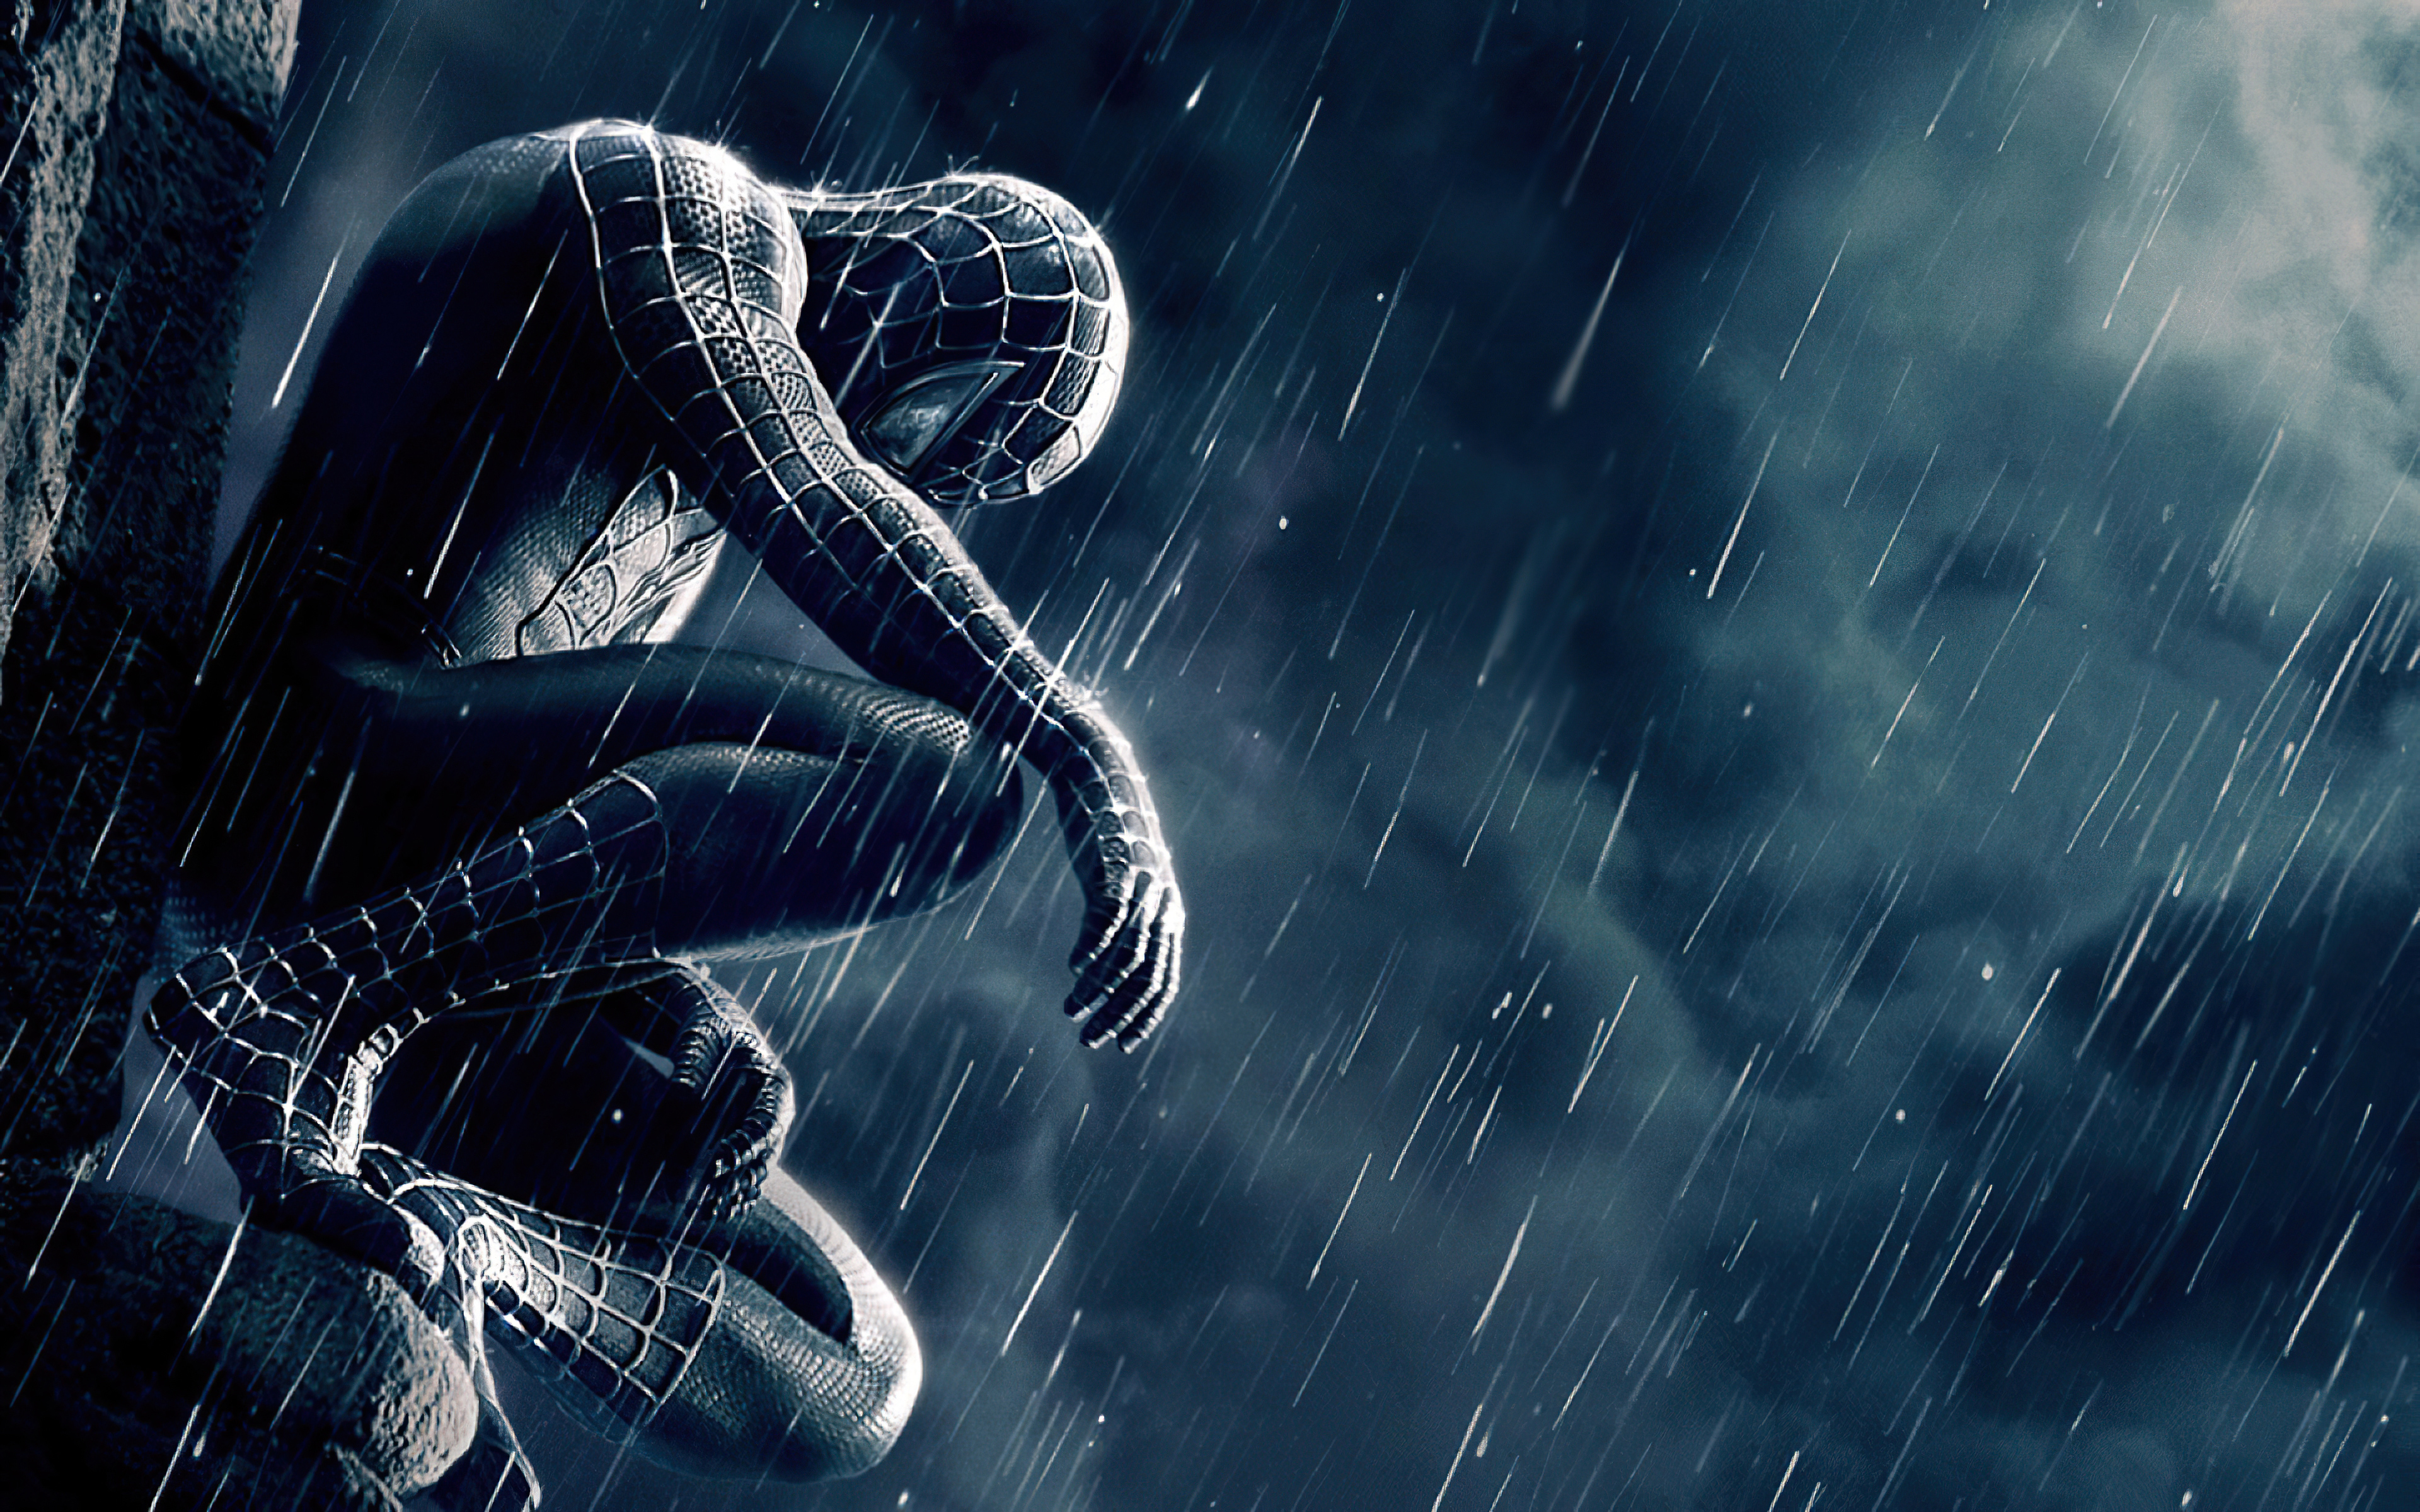 Điều đặc biệt về hình nền Spider-Man đen 4K với độ phân giải 2560x1080 là bạn sẽ thấy chi tiết cực sắc nét ngay cả khi màn hình rộng. Với đường viền đen bao quanh, bạn sẽ cảm thấy như đang tham gia vào cuộc phiêu lưu của Black Spider-Man.